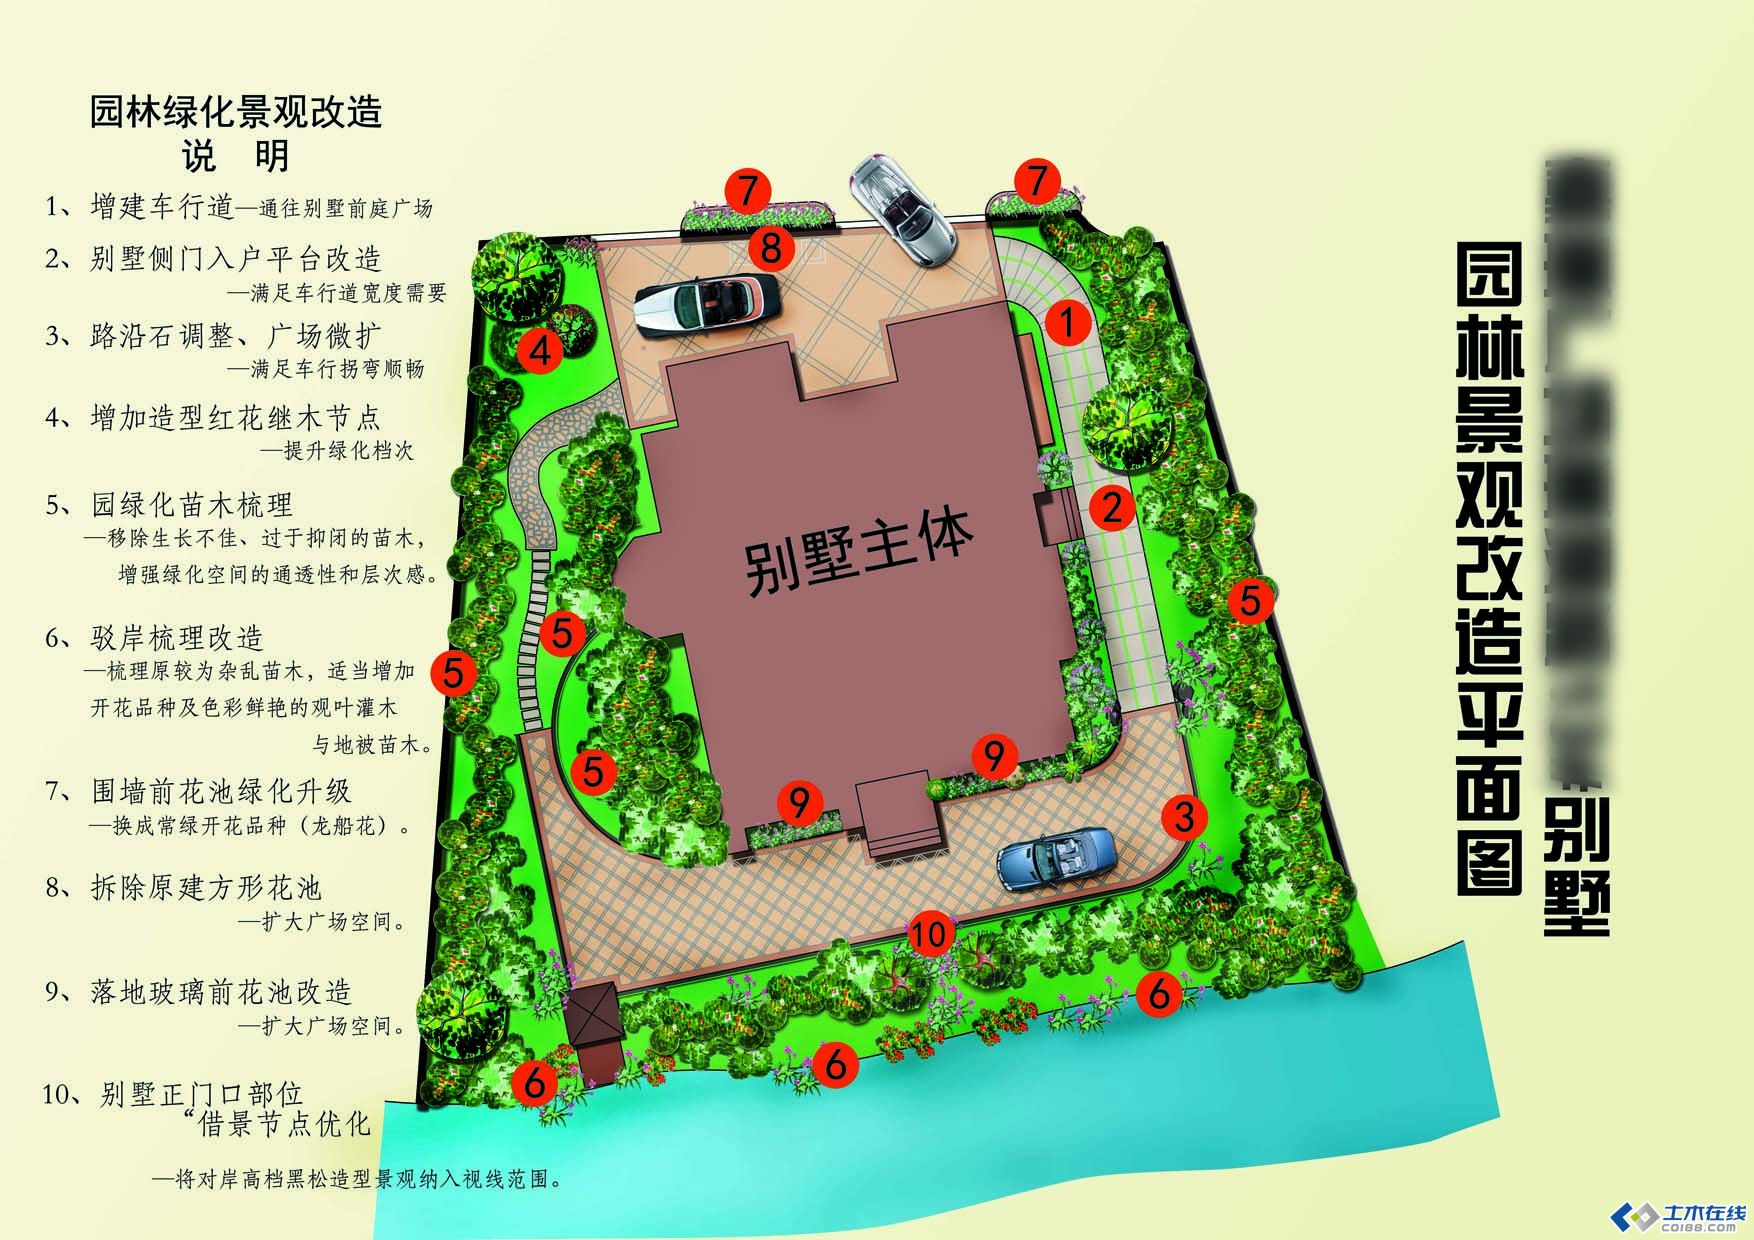 嘉琳广场琳湖路13#别墅-李公馆景观改造平面图-上传用.jpg